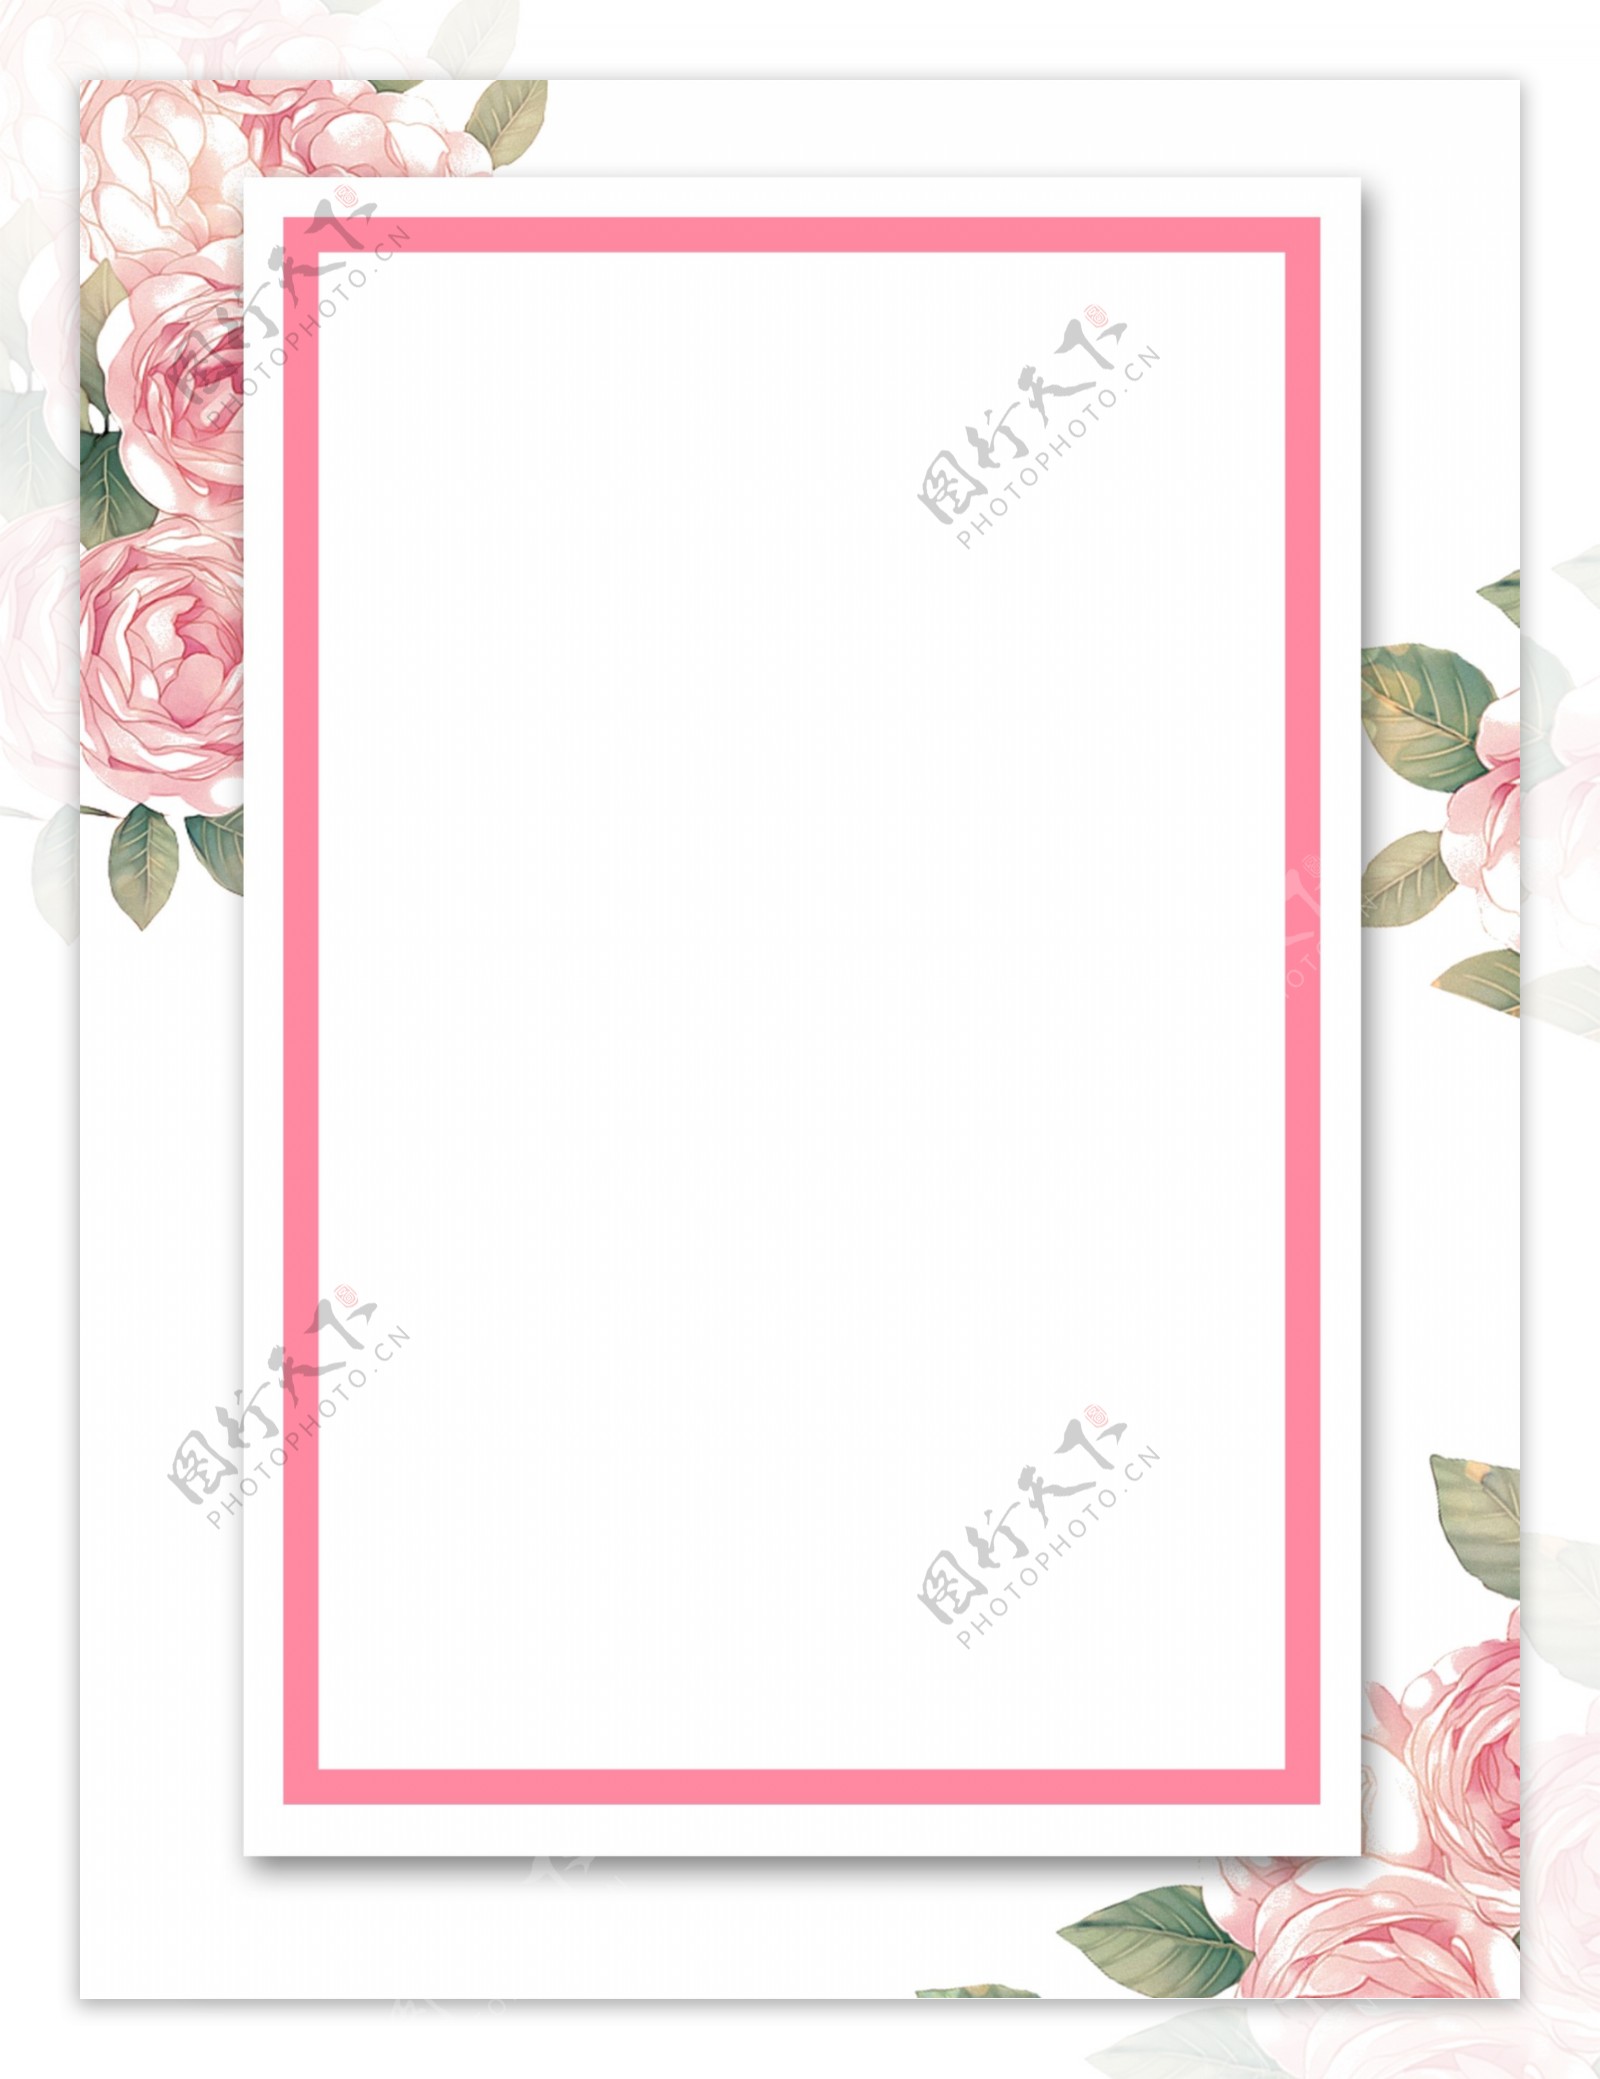 彩绘粉色花朵边框活动邀请函背景设计